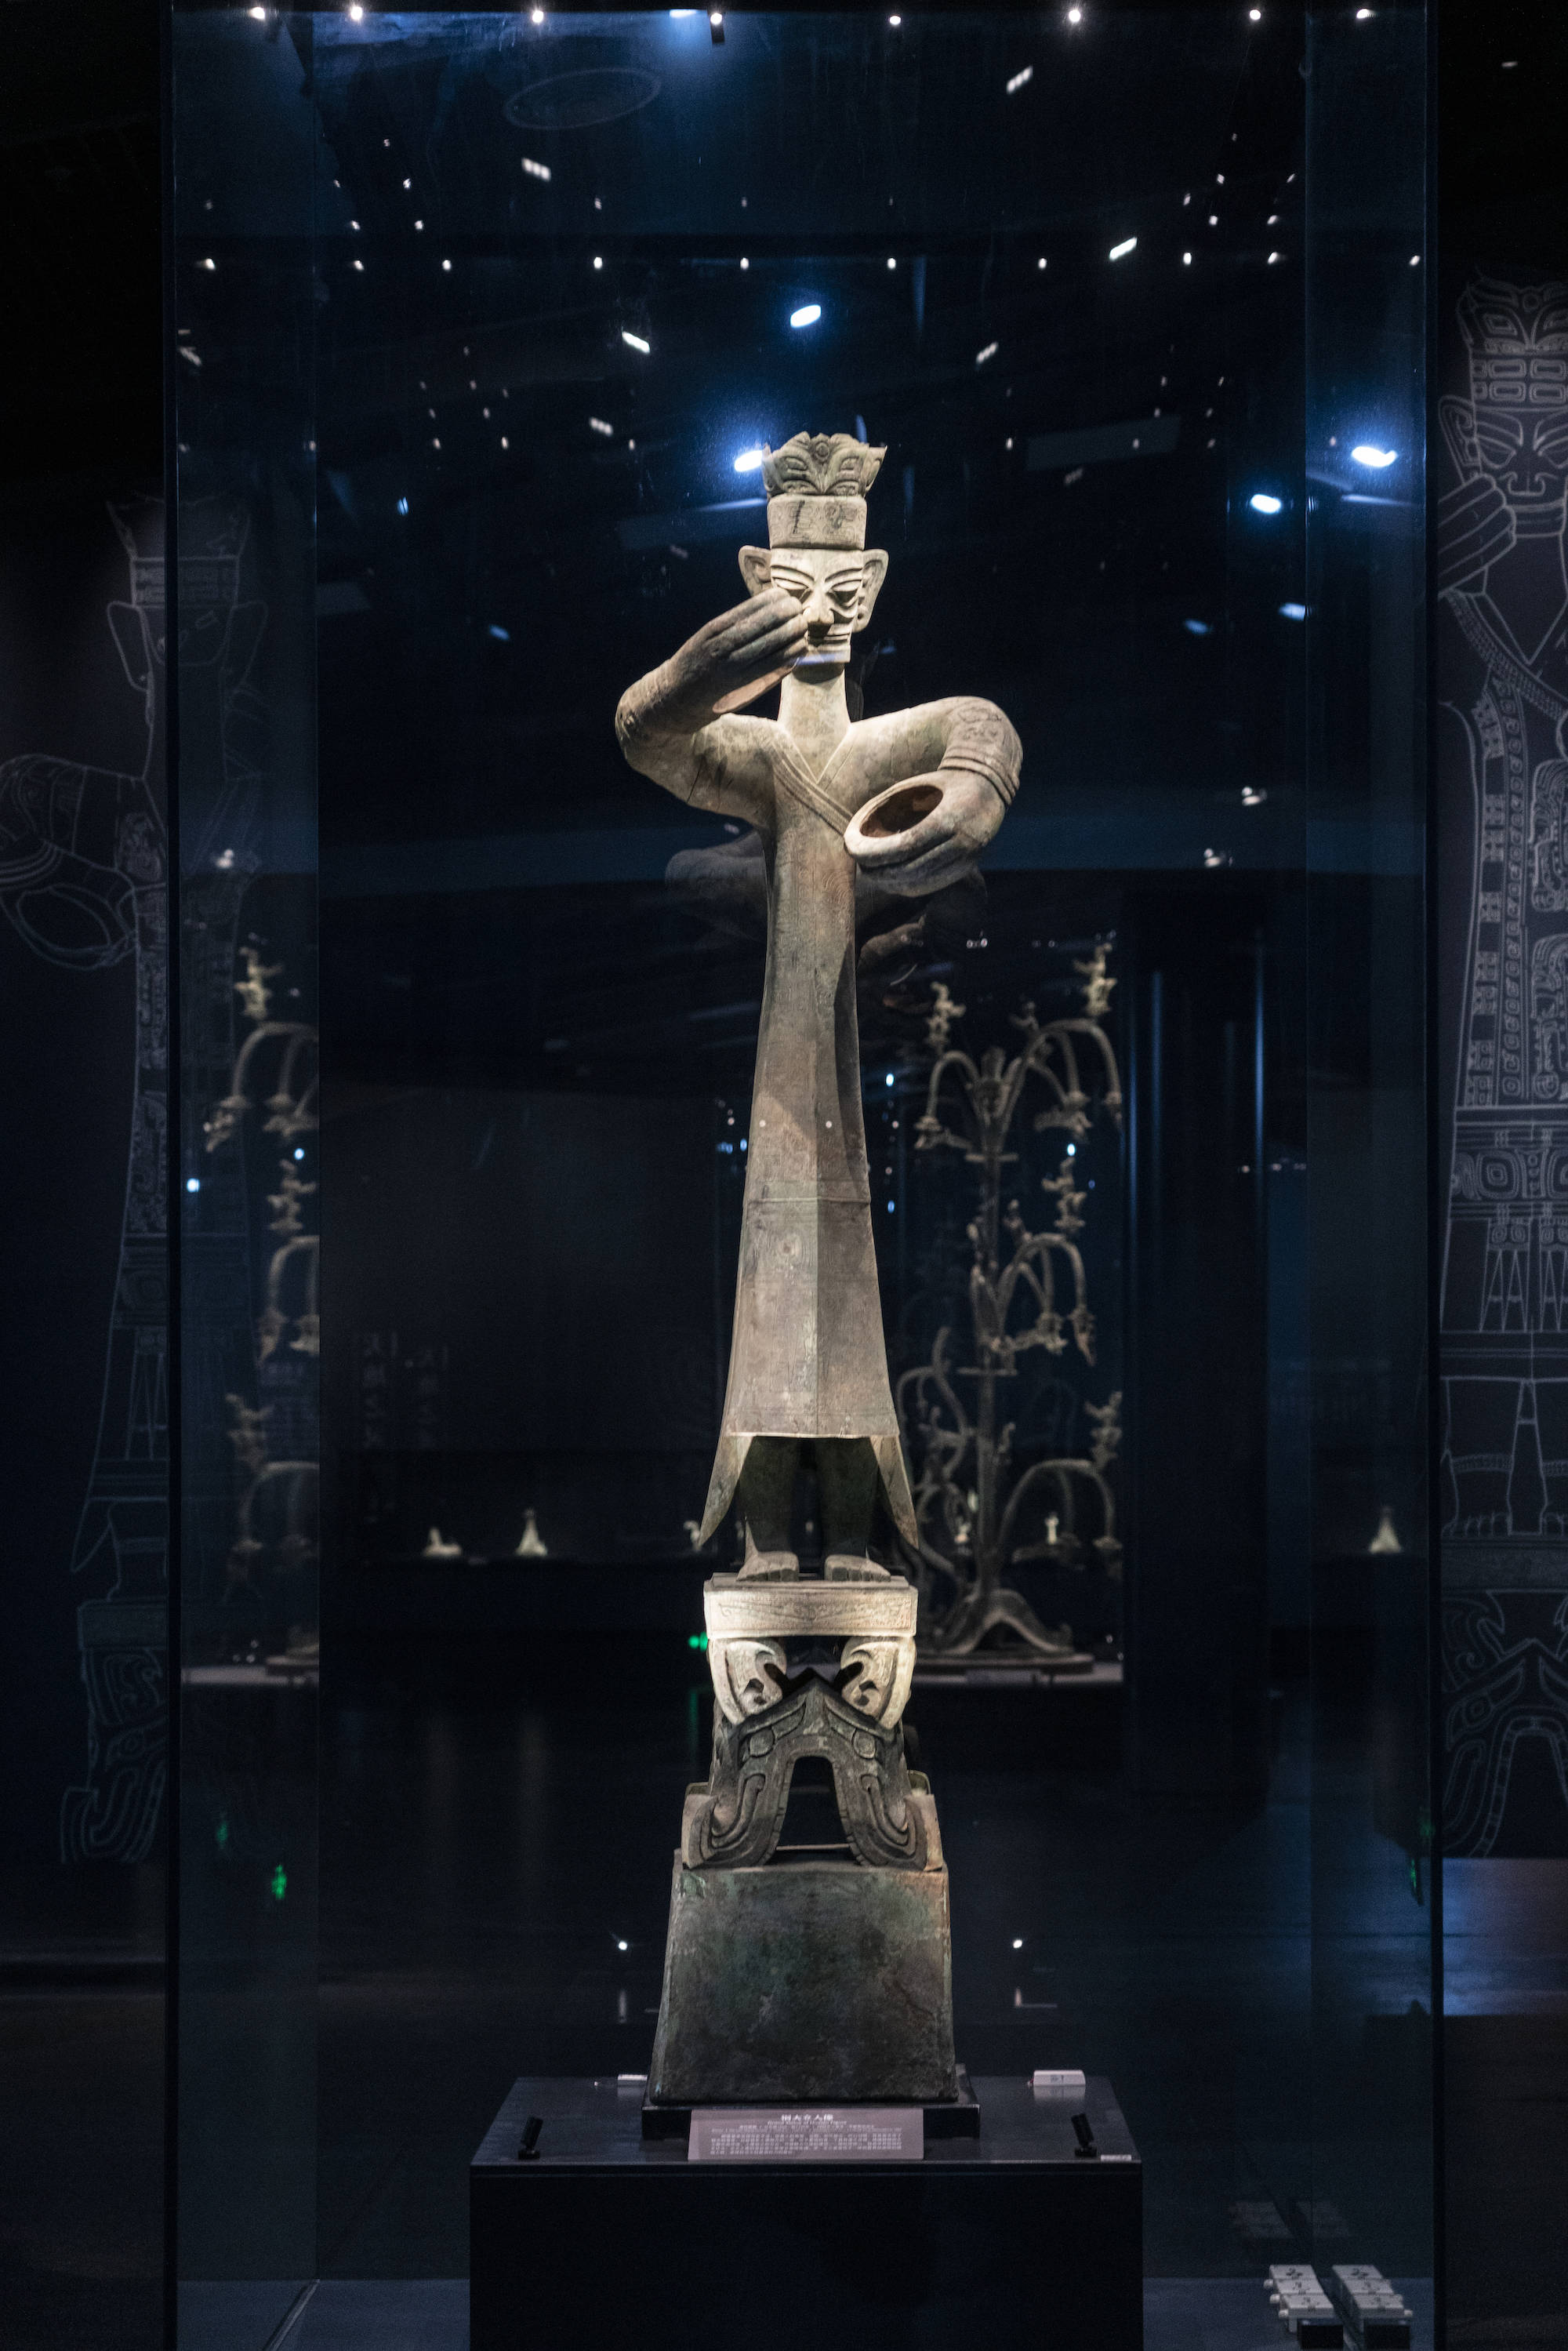 青铜大立人像这是三星堆一号展馆最为显眼的展品,人像高高180厘米,加